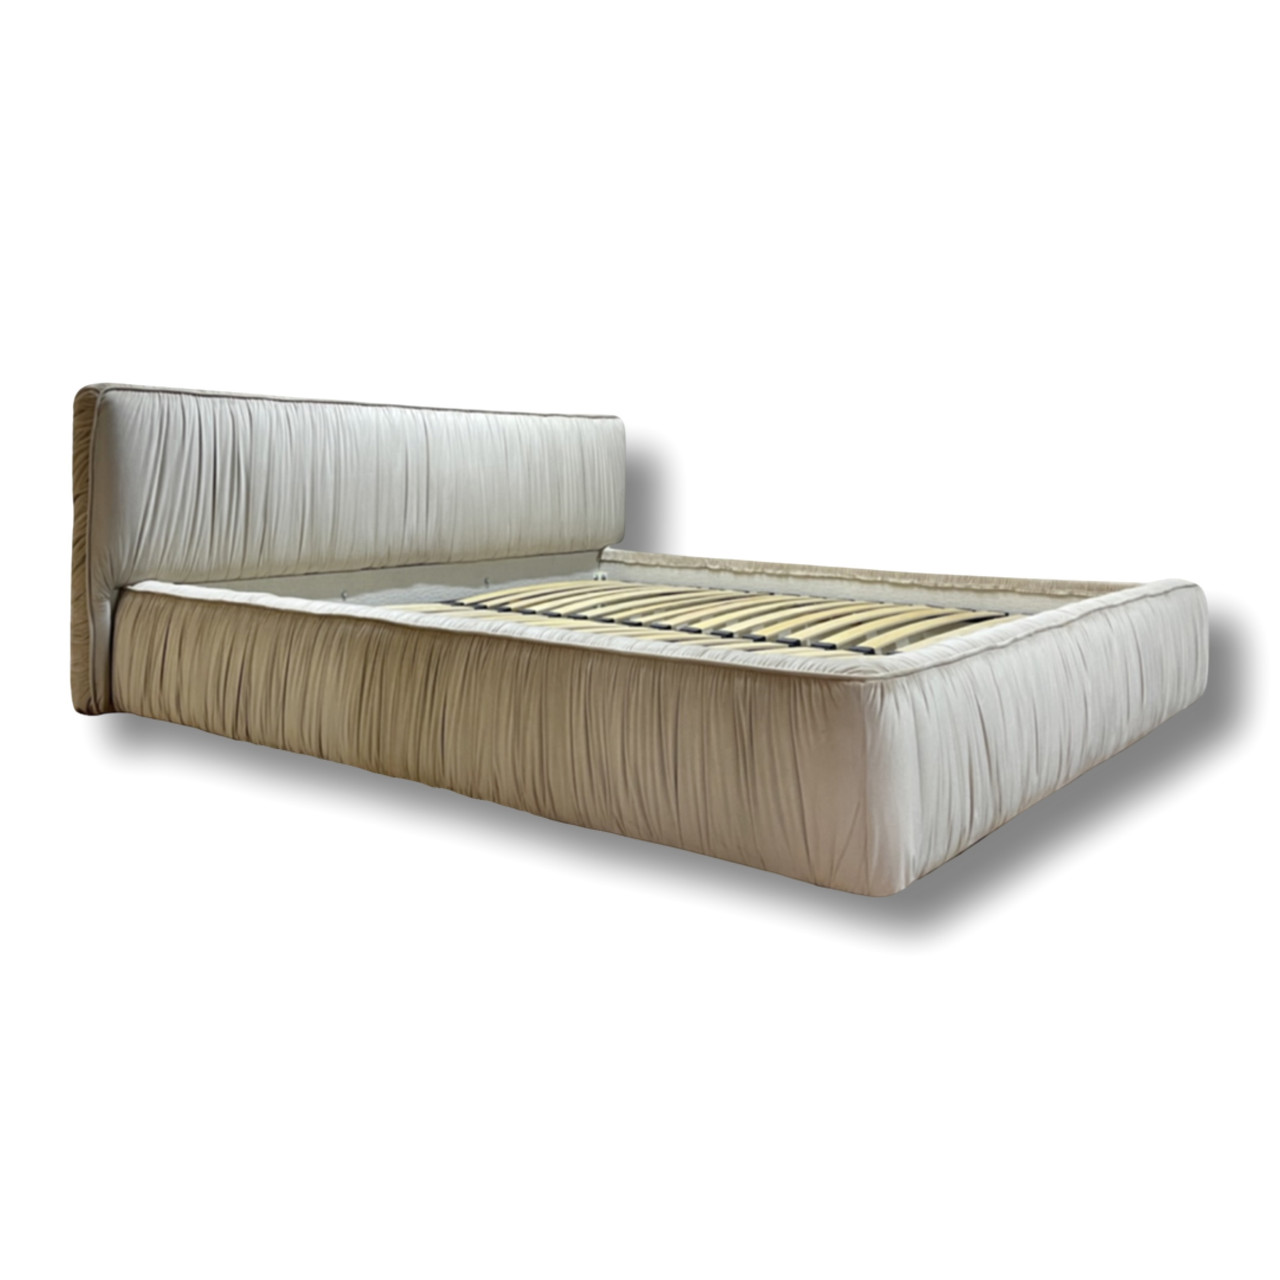 Двоспальне ліжко м'яке софт на подіумі MeBelle PUFFIE 180х200 см, стиль зефірка, світло-бежевий велюр